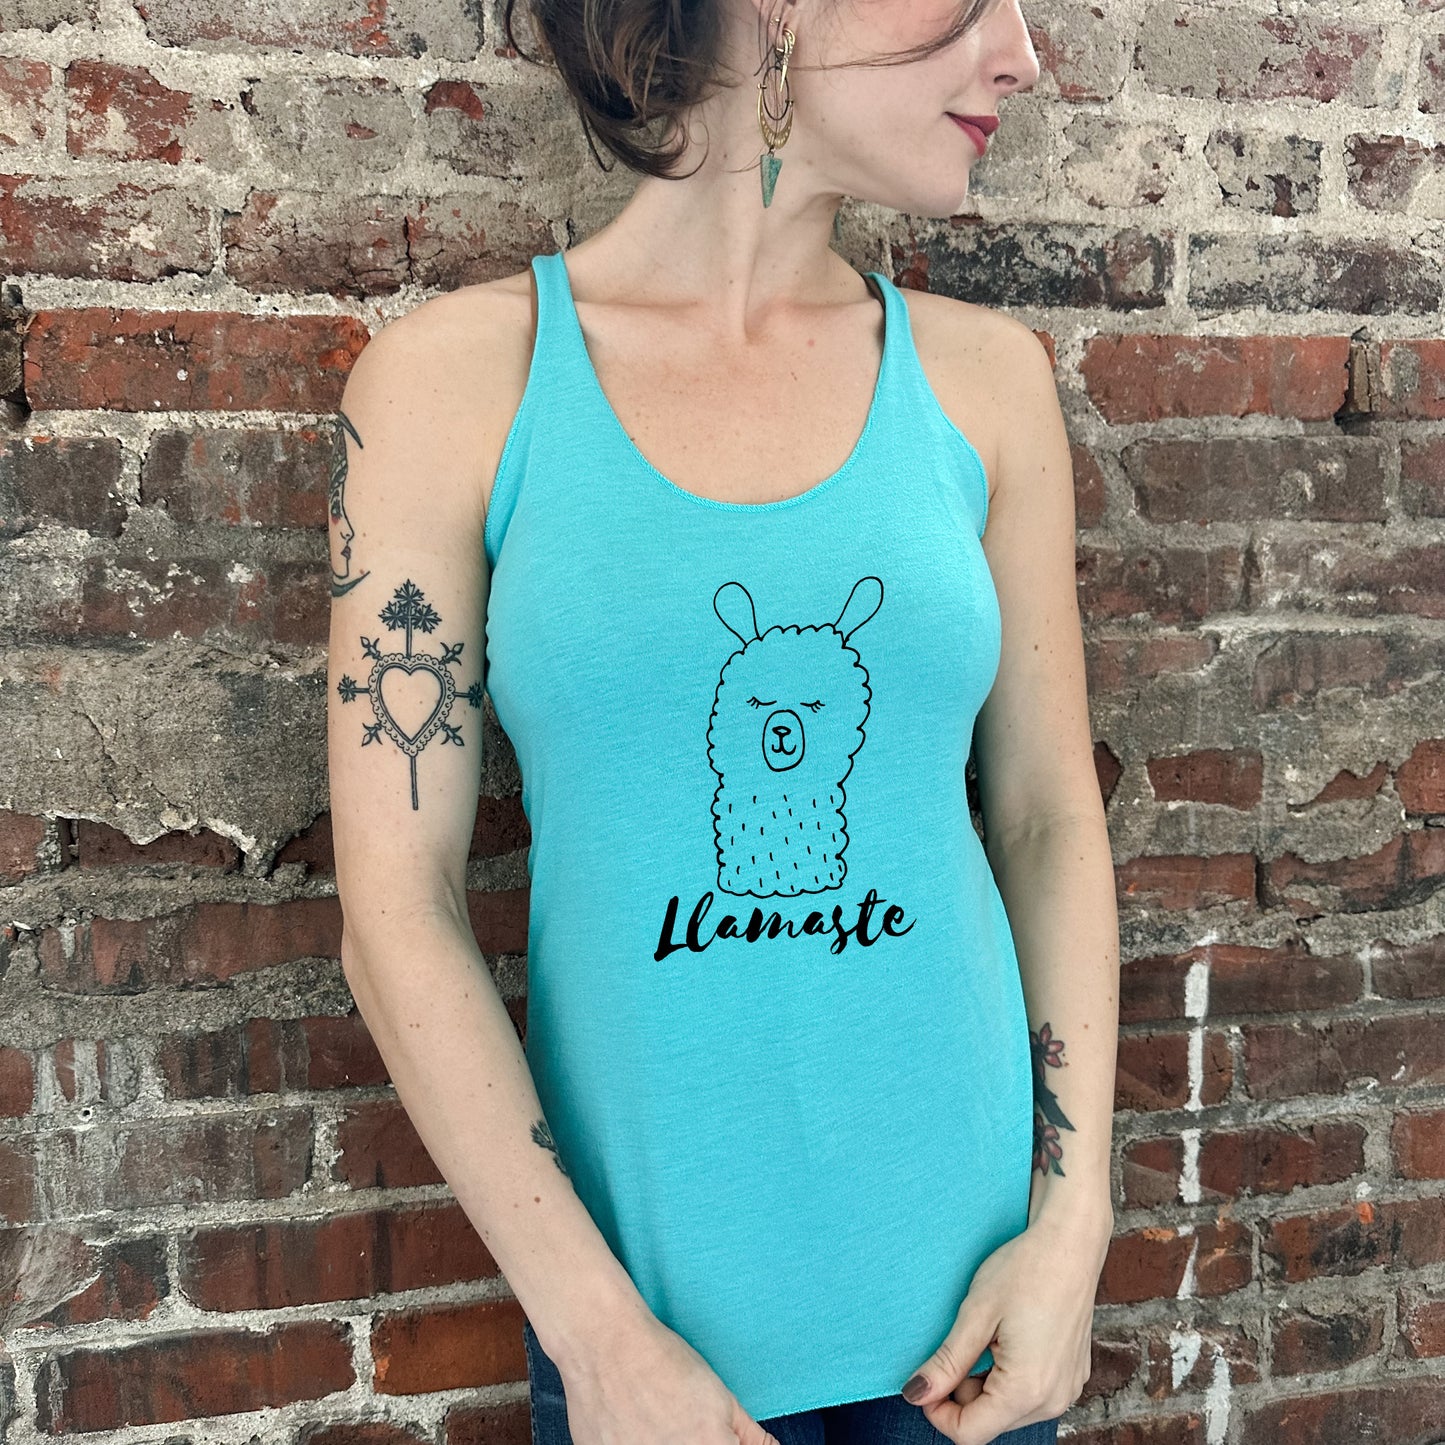 Llamaste (Llama/ Yoga) - Women's Tank - Heather Gray, Tahiti, or Envy